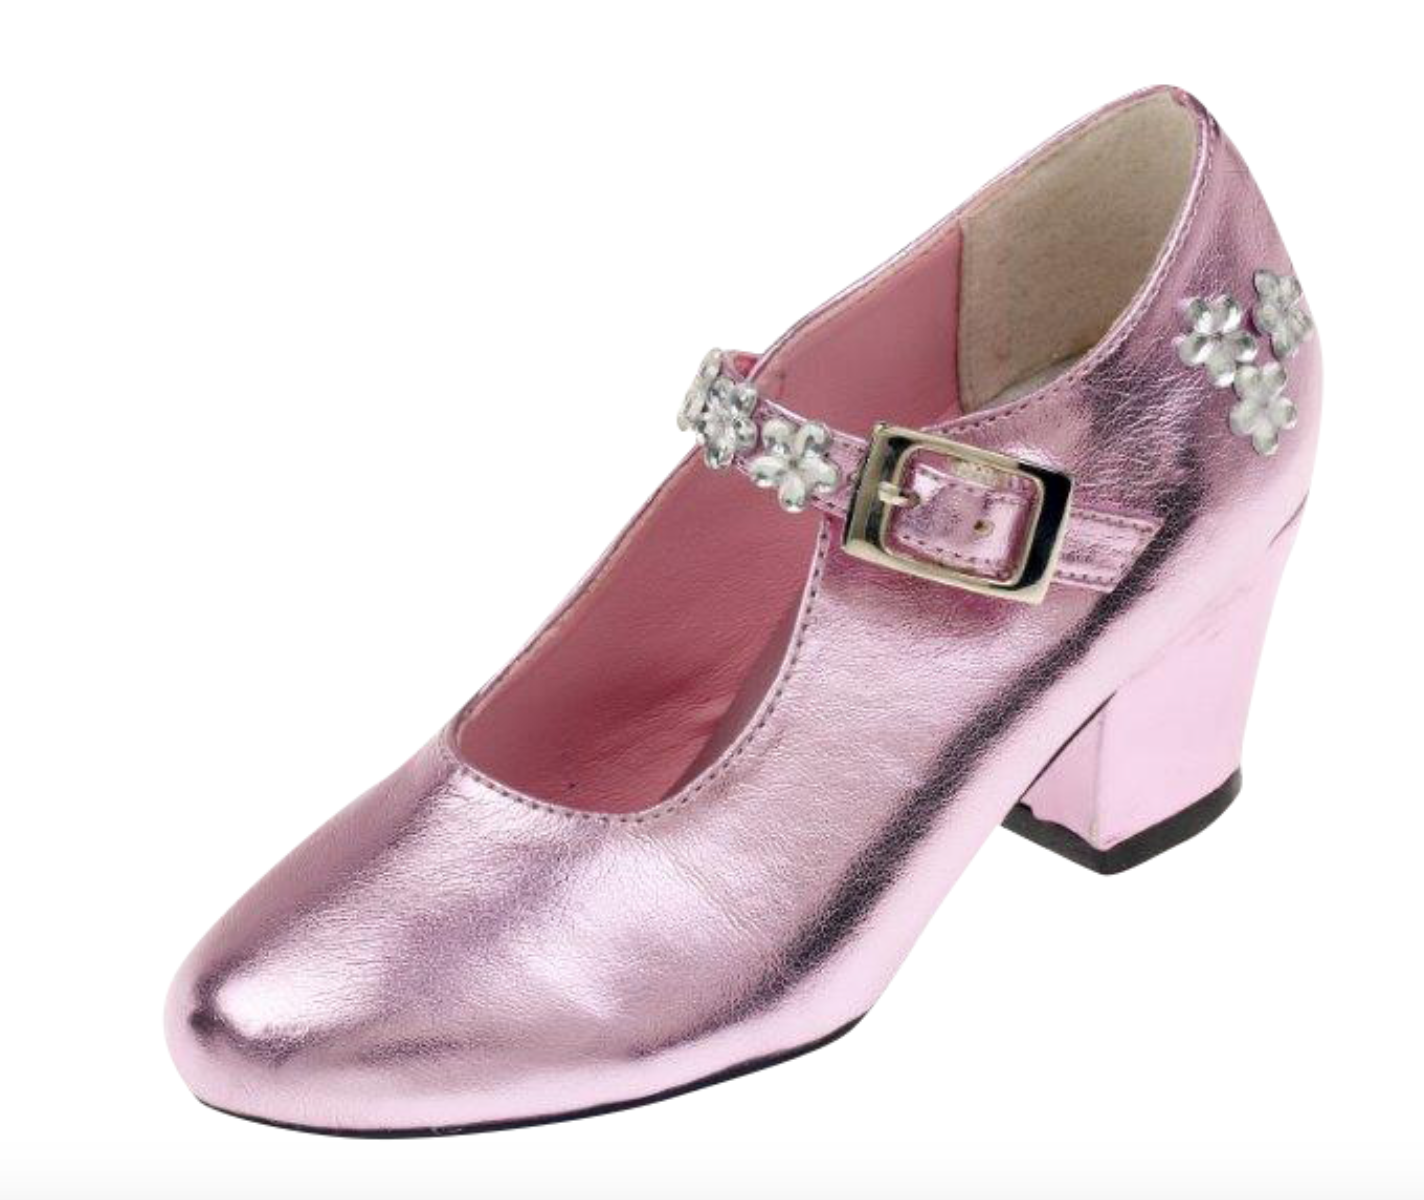 Schoenen roze metallic, hoge hak, mt 30